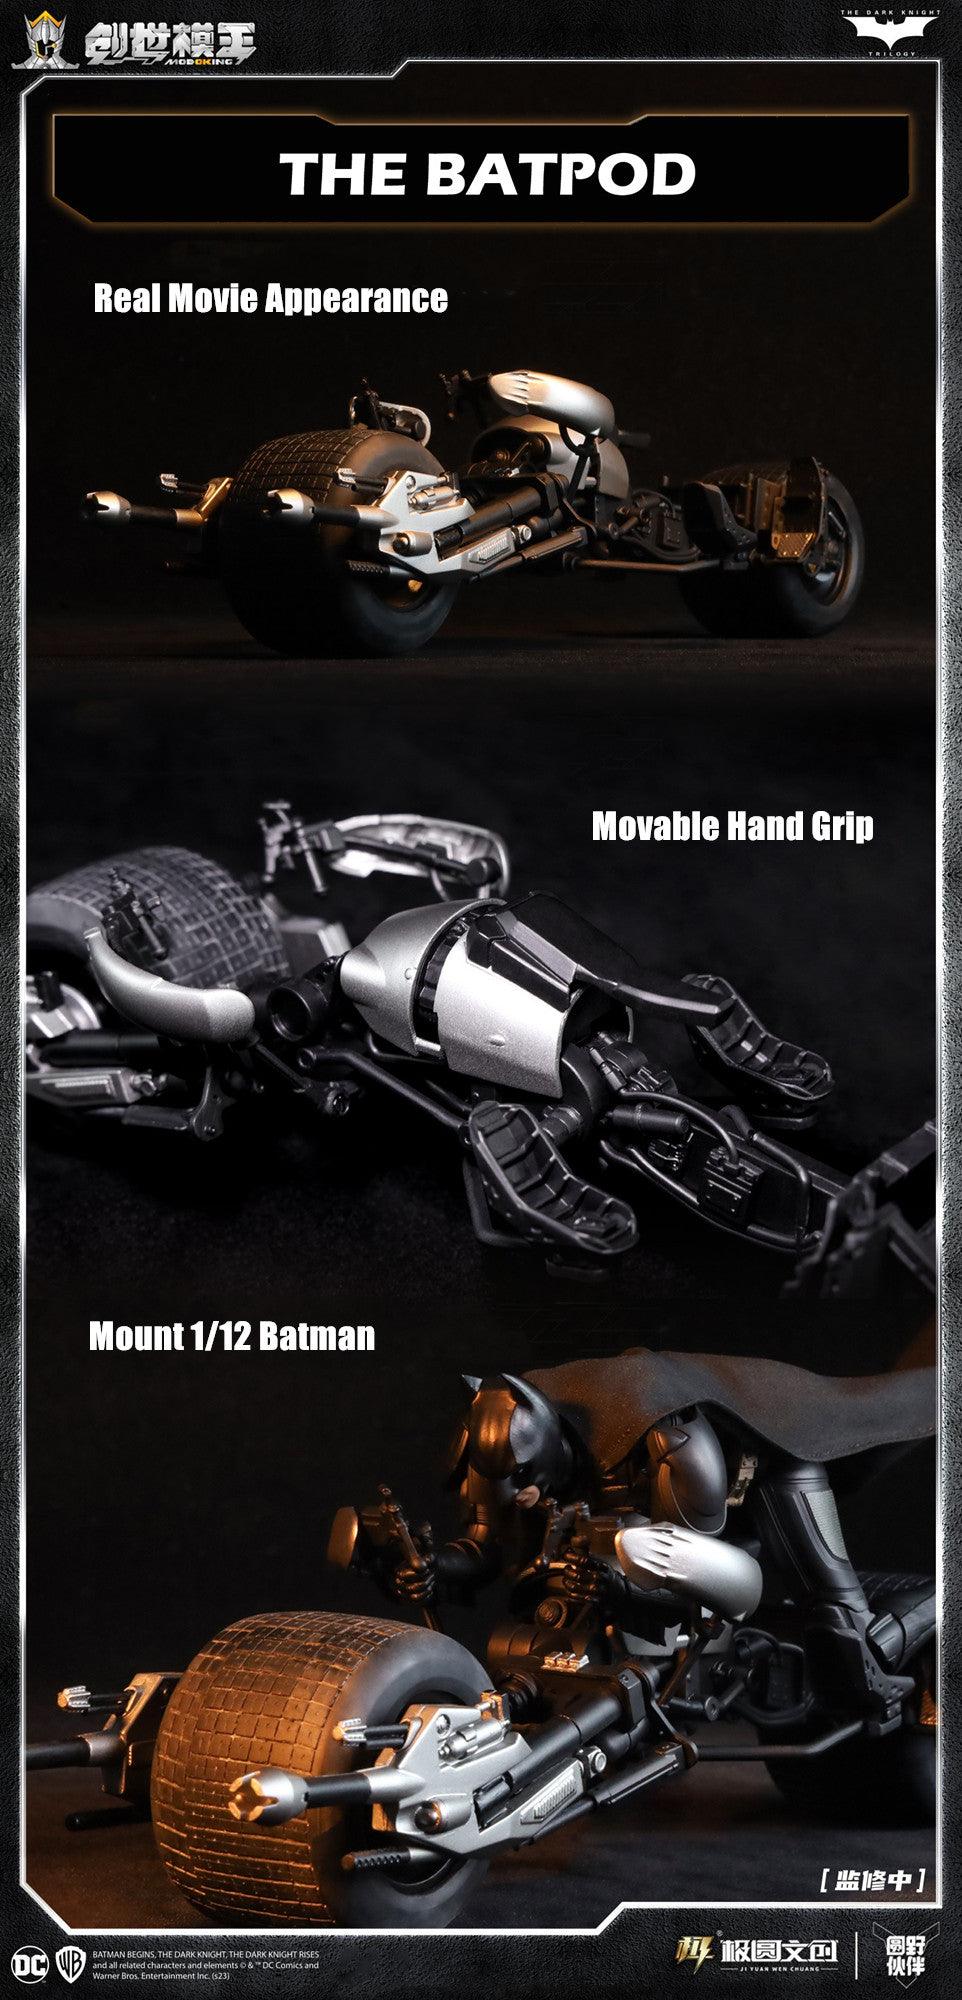 ModoKing - 1:12 Batmobile Tumbler & Batpod Assembly Kit